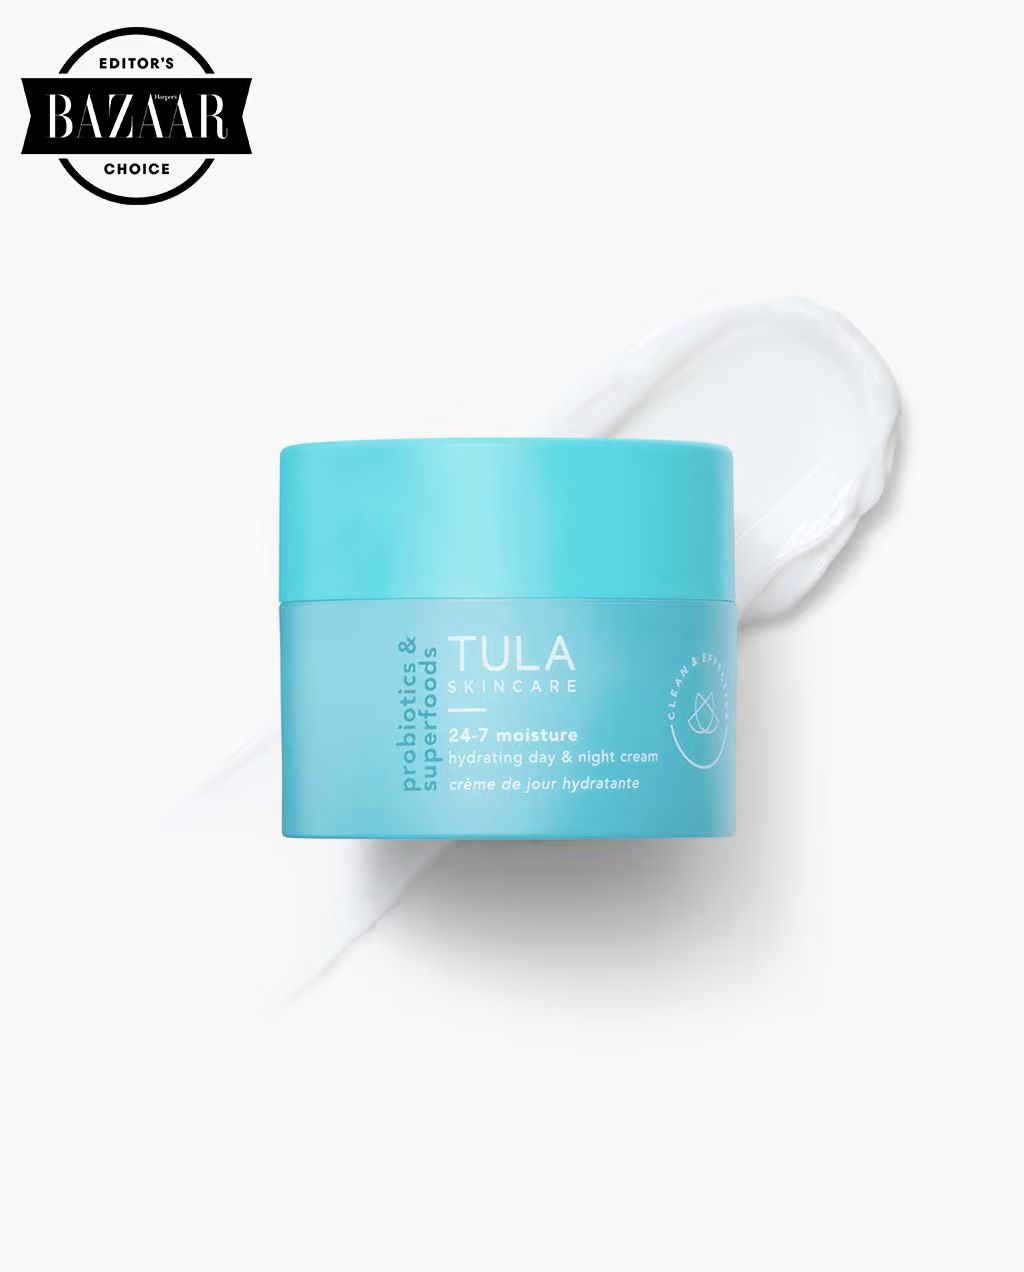 24-7 moisture | Tula Skincare